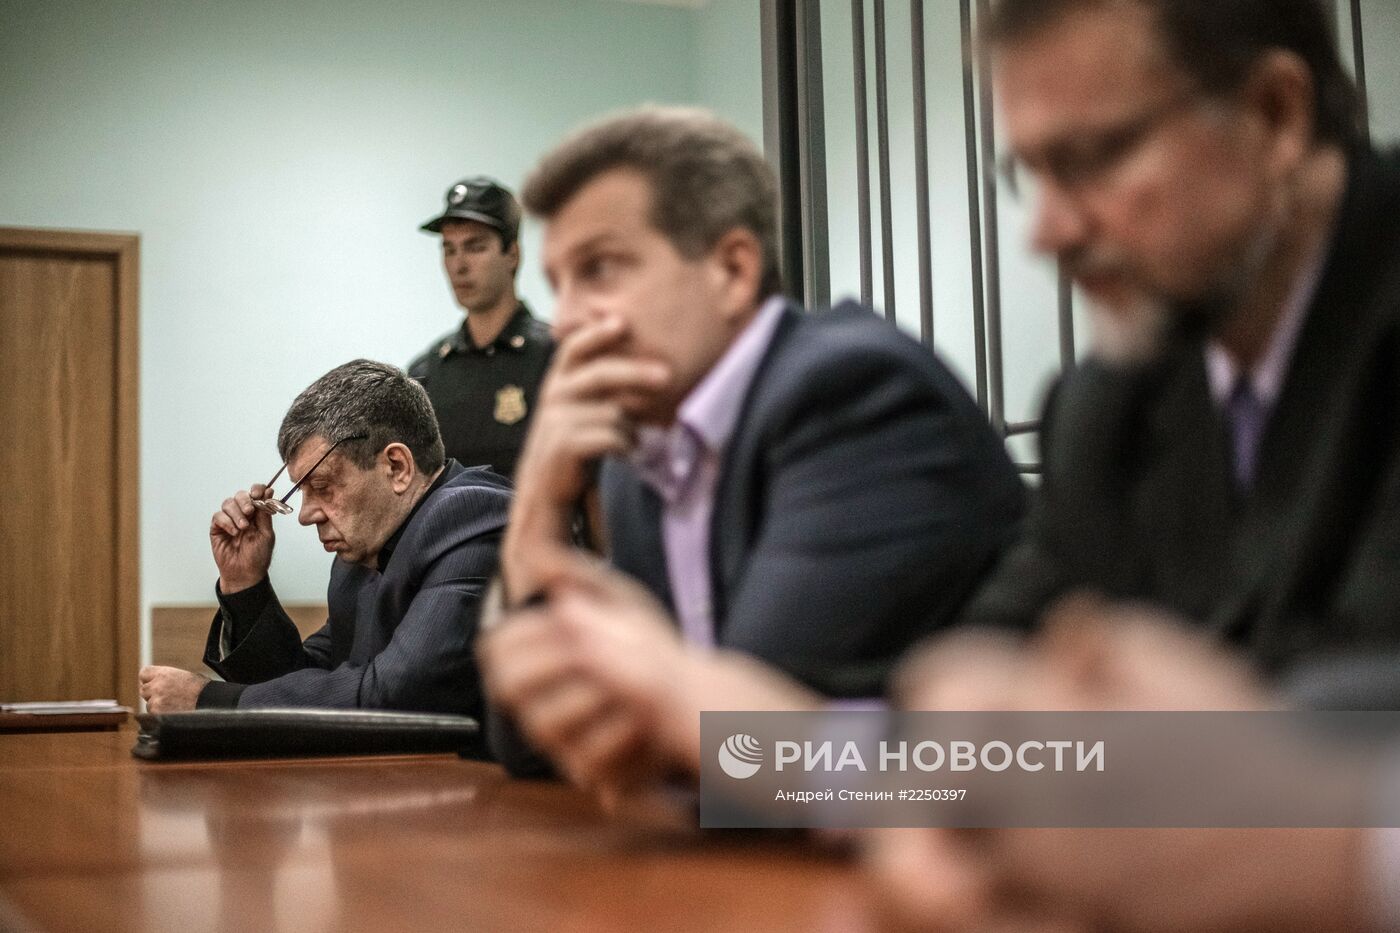 Оглашение приговора экс-губернатору Вячеславу Дудке